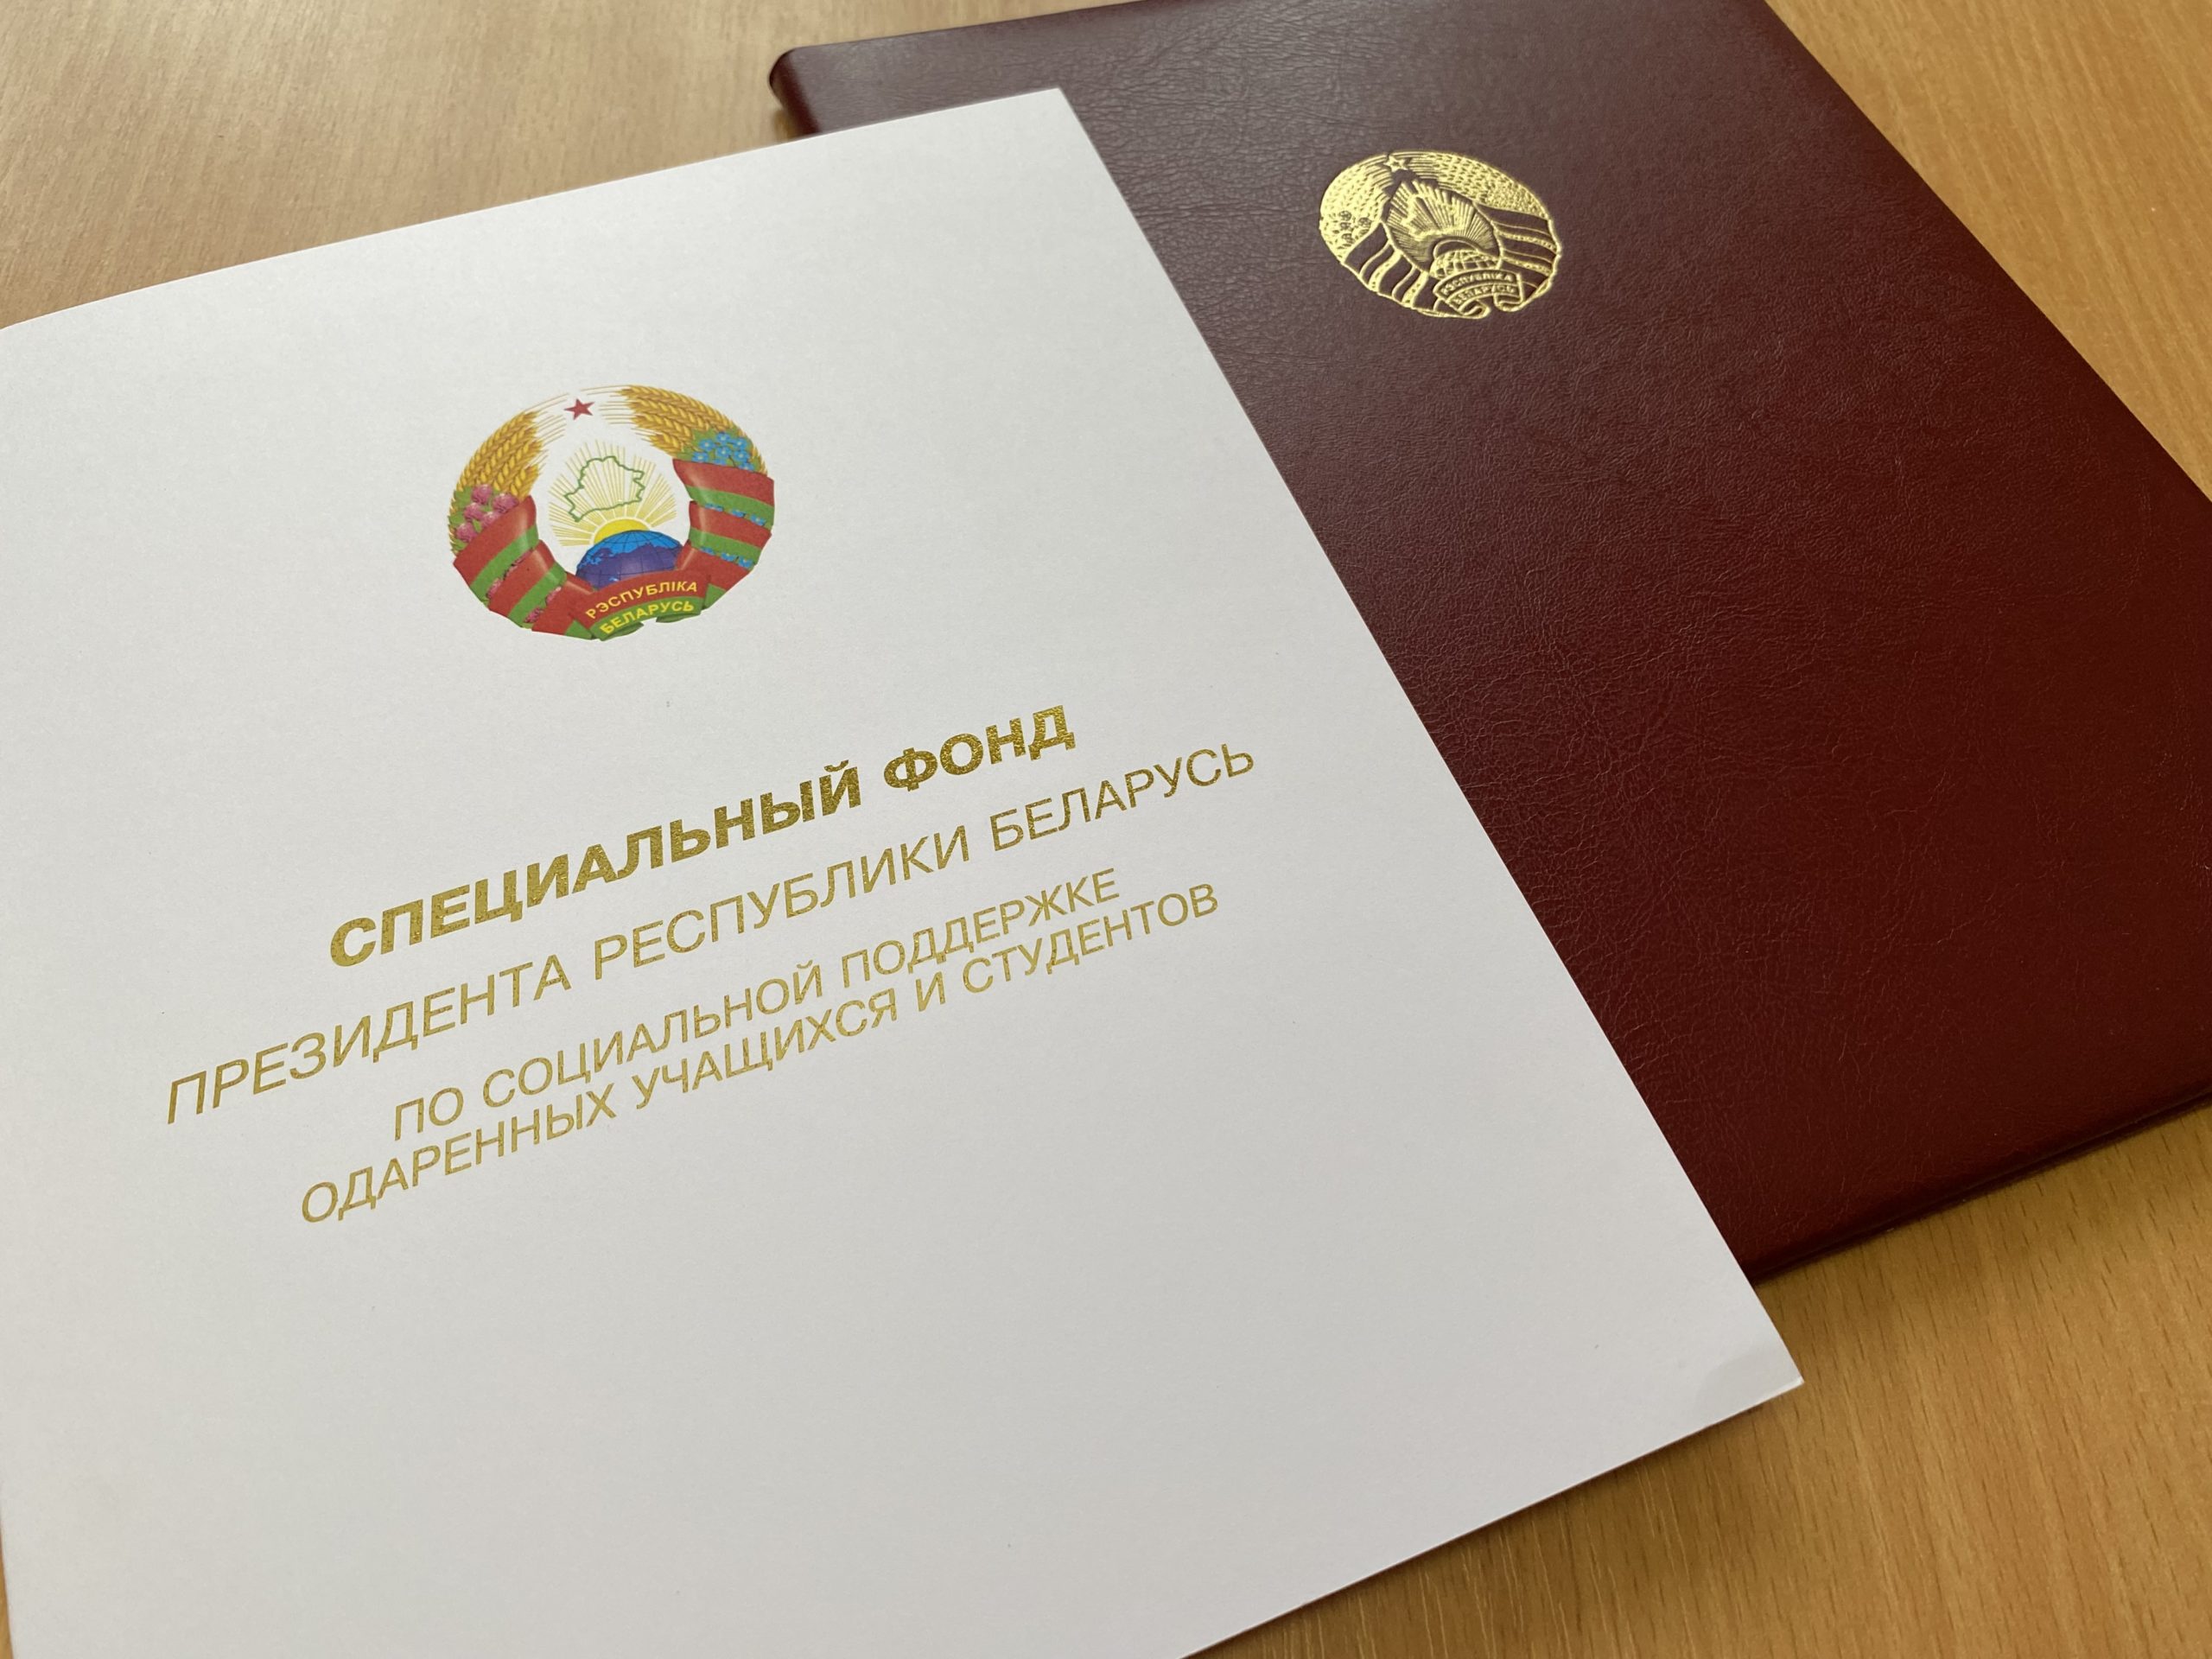 Награда специального фонда Президента Республики Беларусь по социальной поддержке одаренных учащихся и студентов